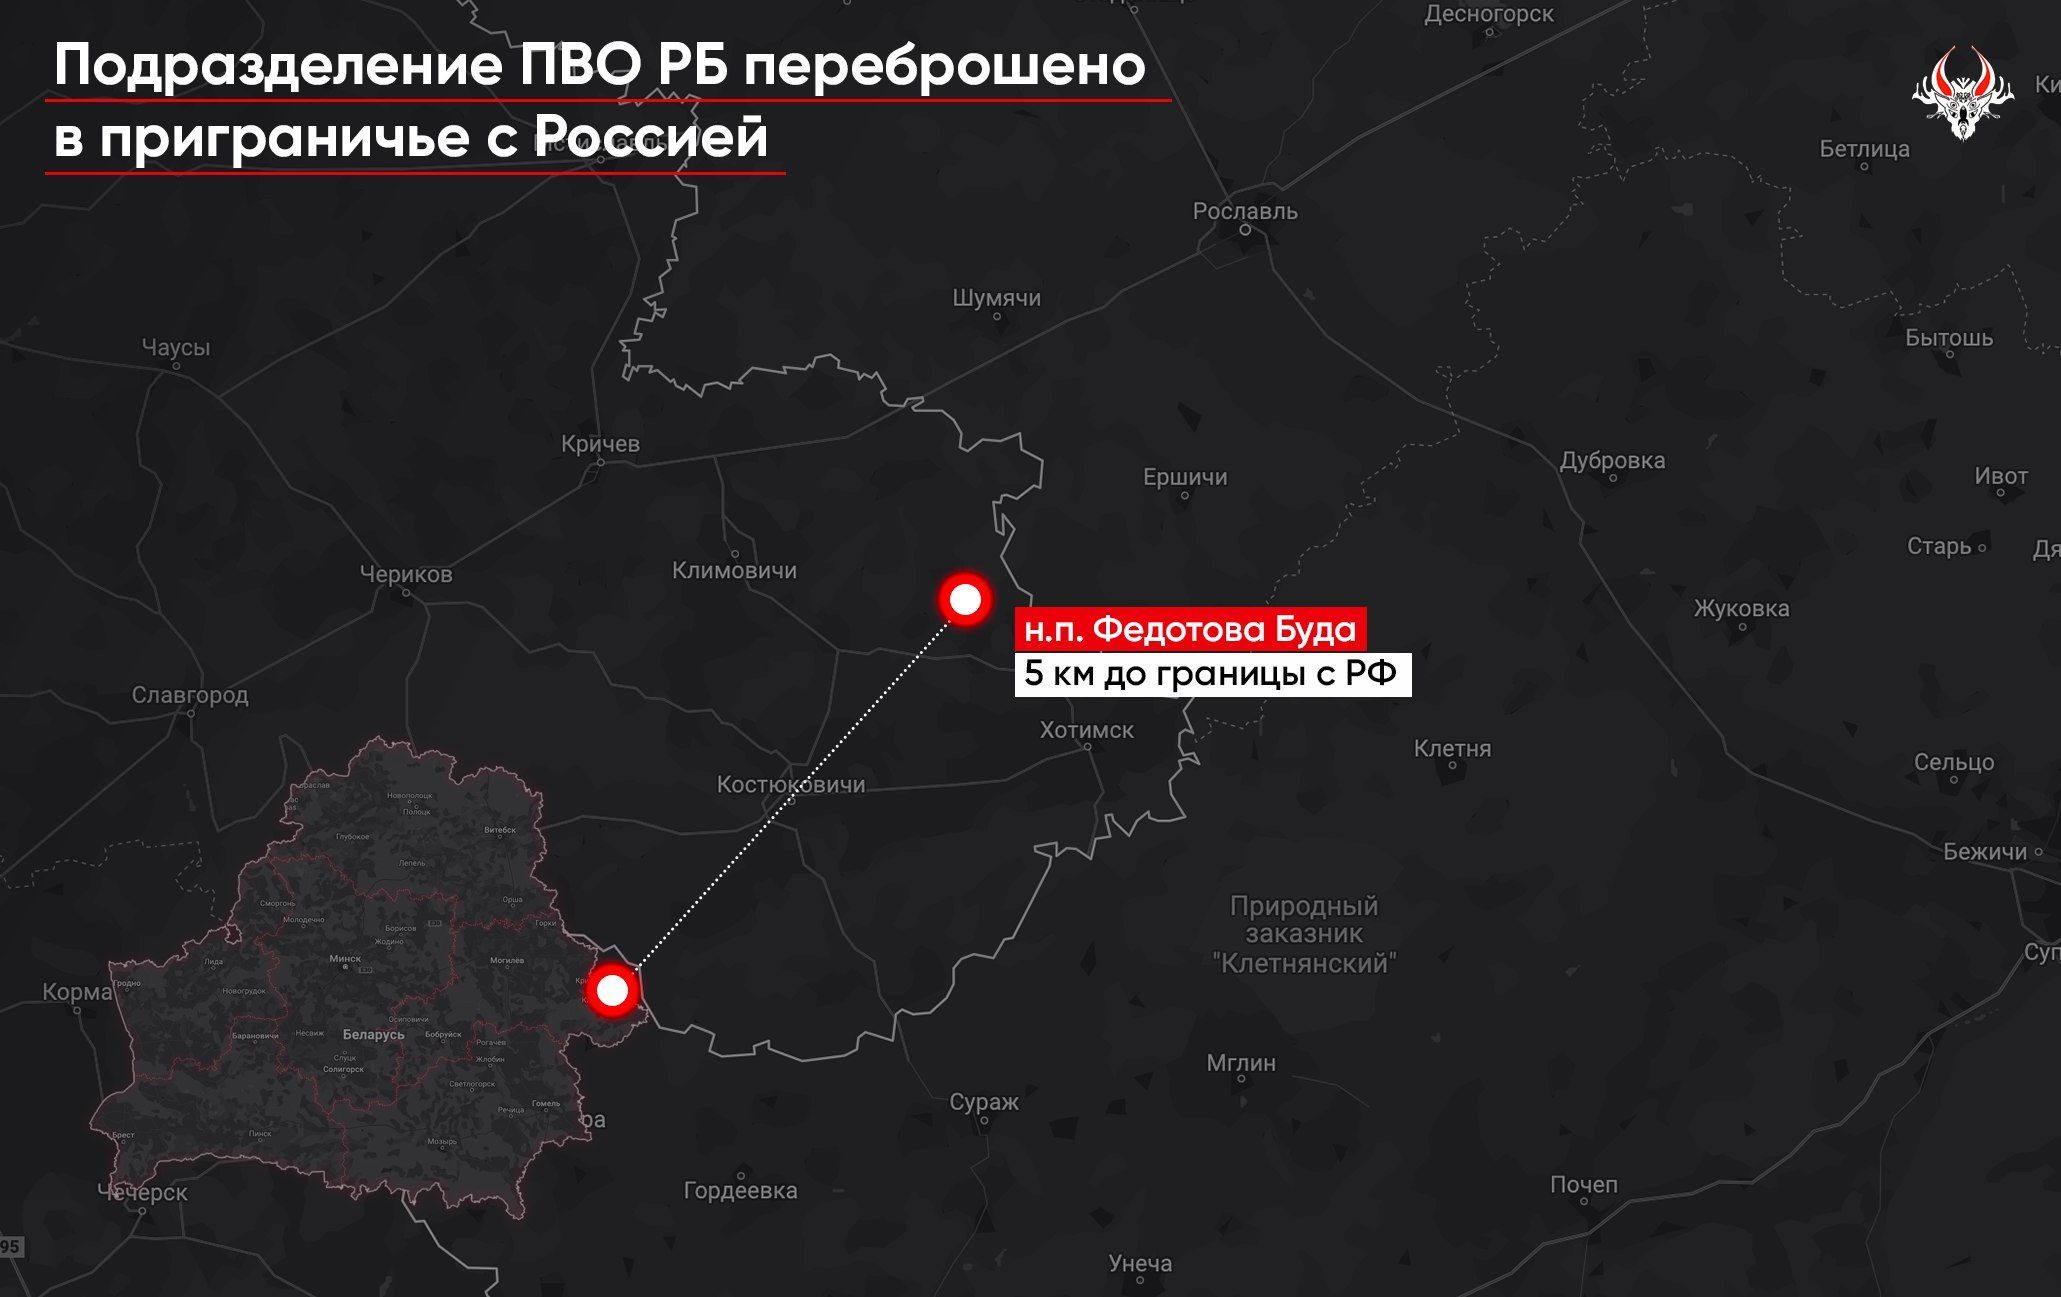 Один ракетный полк опрокинули в Могилевскую область